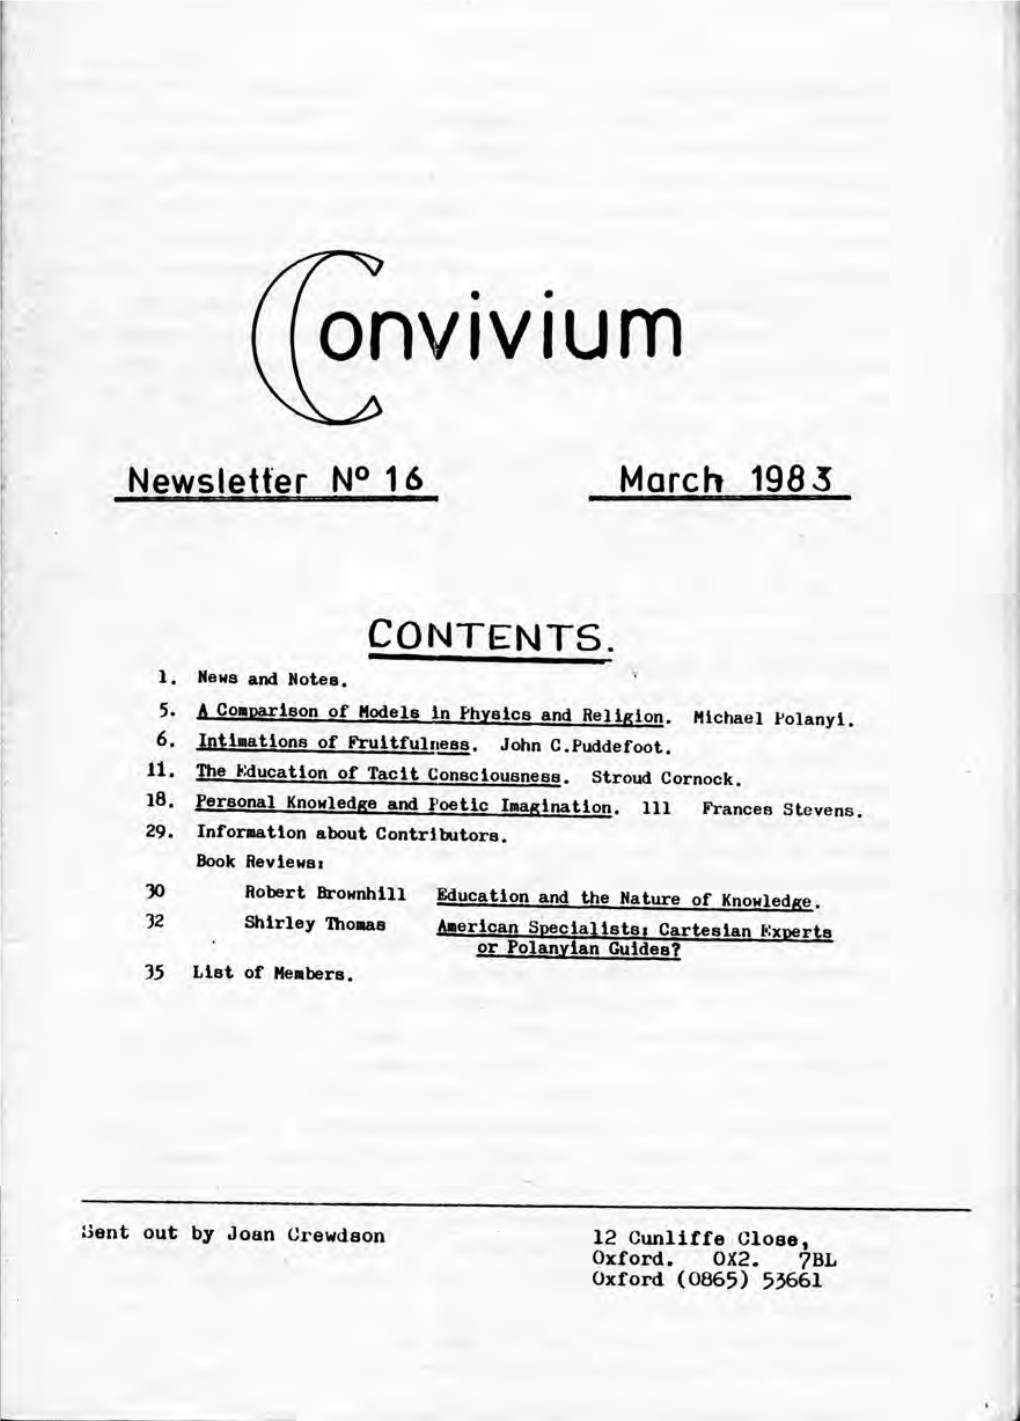 Download Convivium 16, March 1983